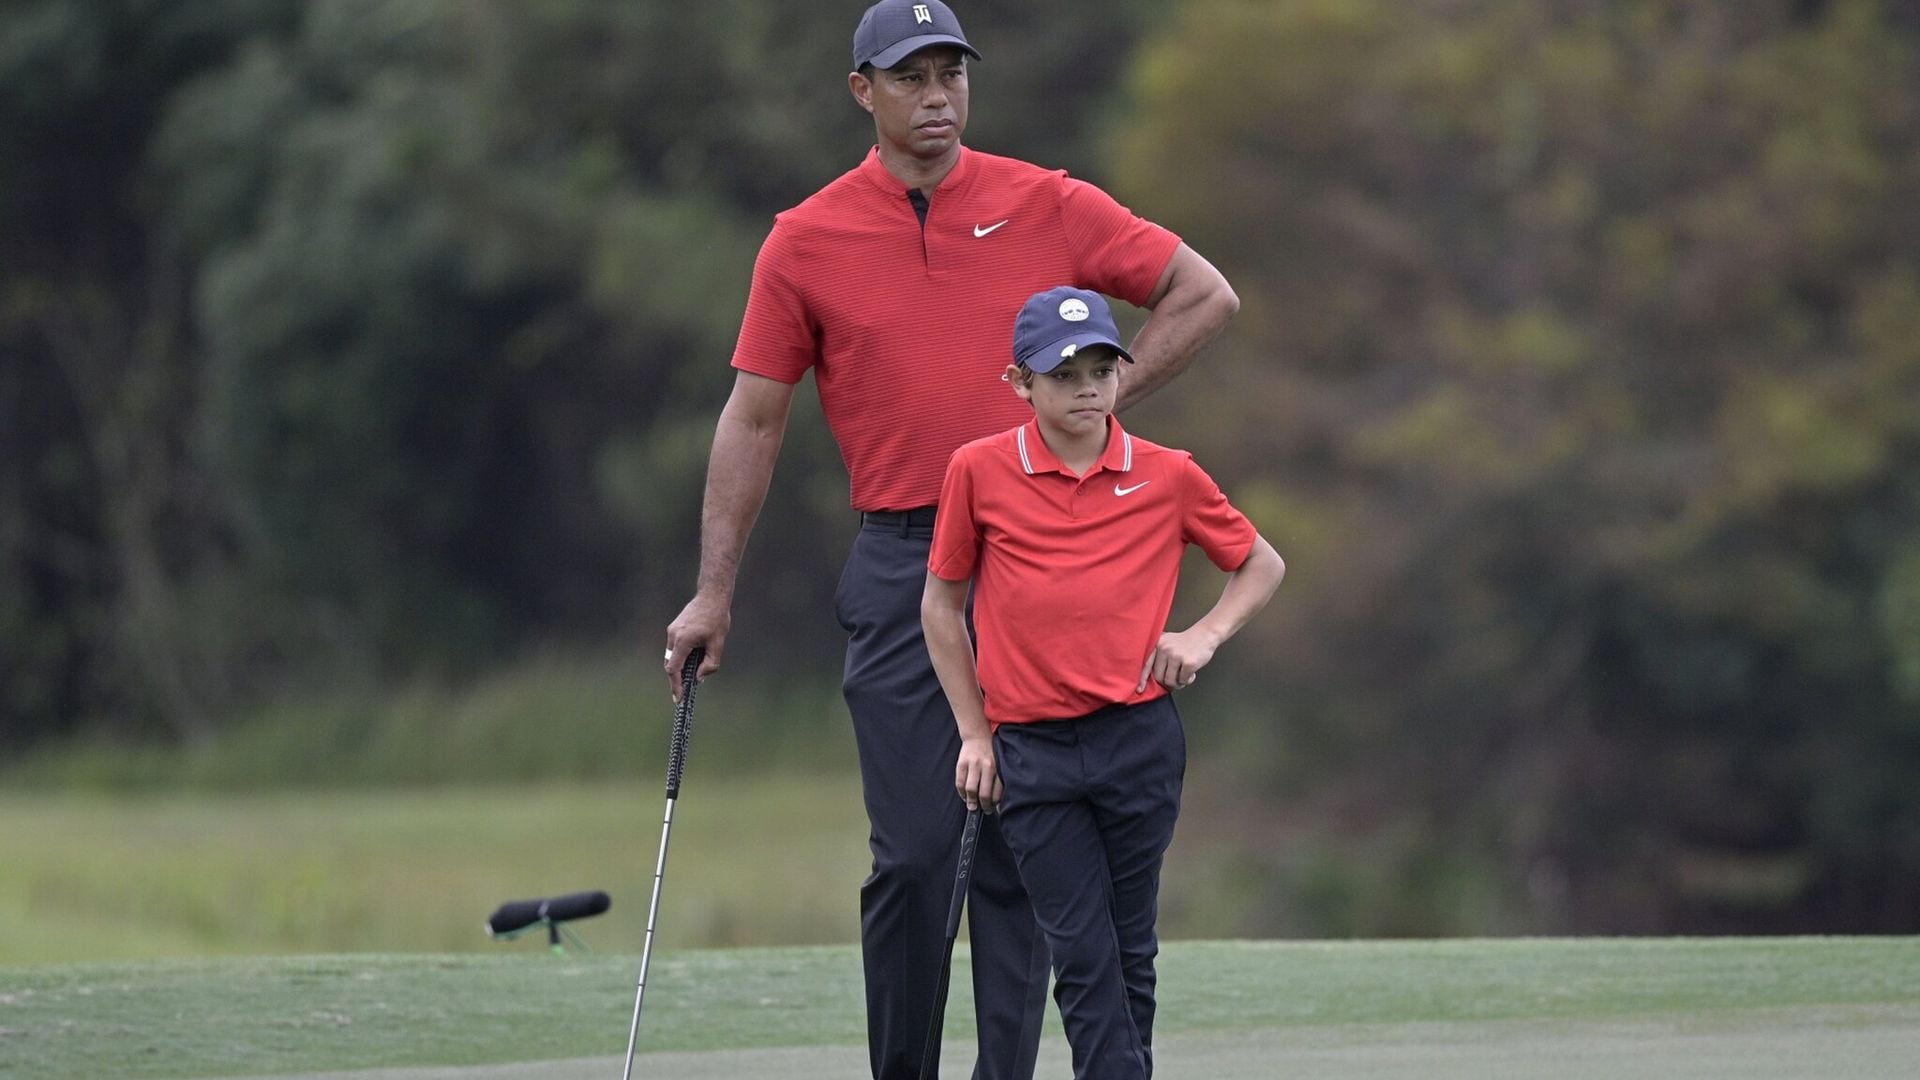 De tal palo... tal astilla: Tiger Woods reaparece tras su dramático accidente y presume de hijos y novia